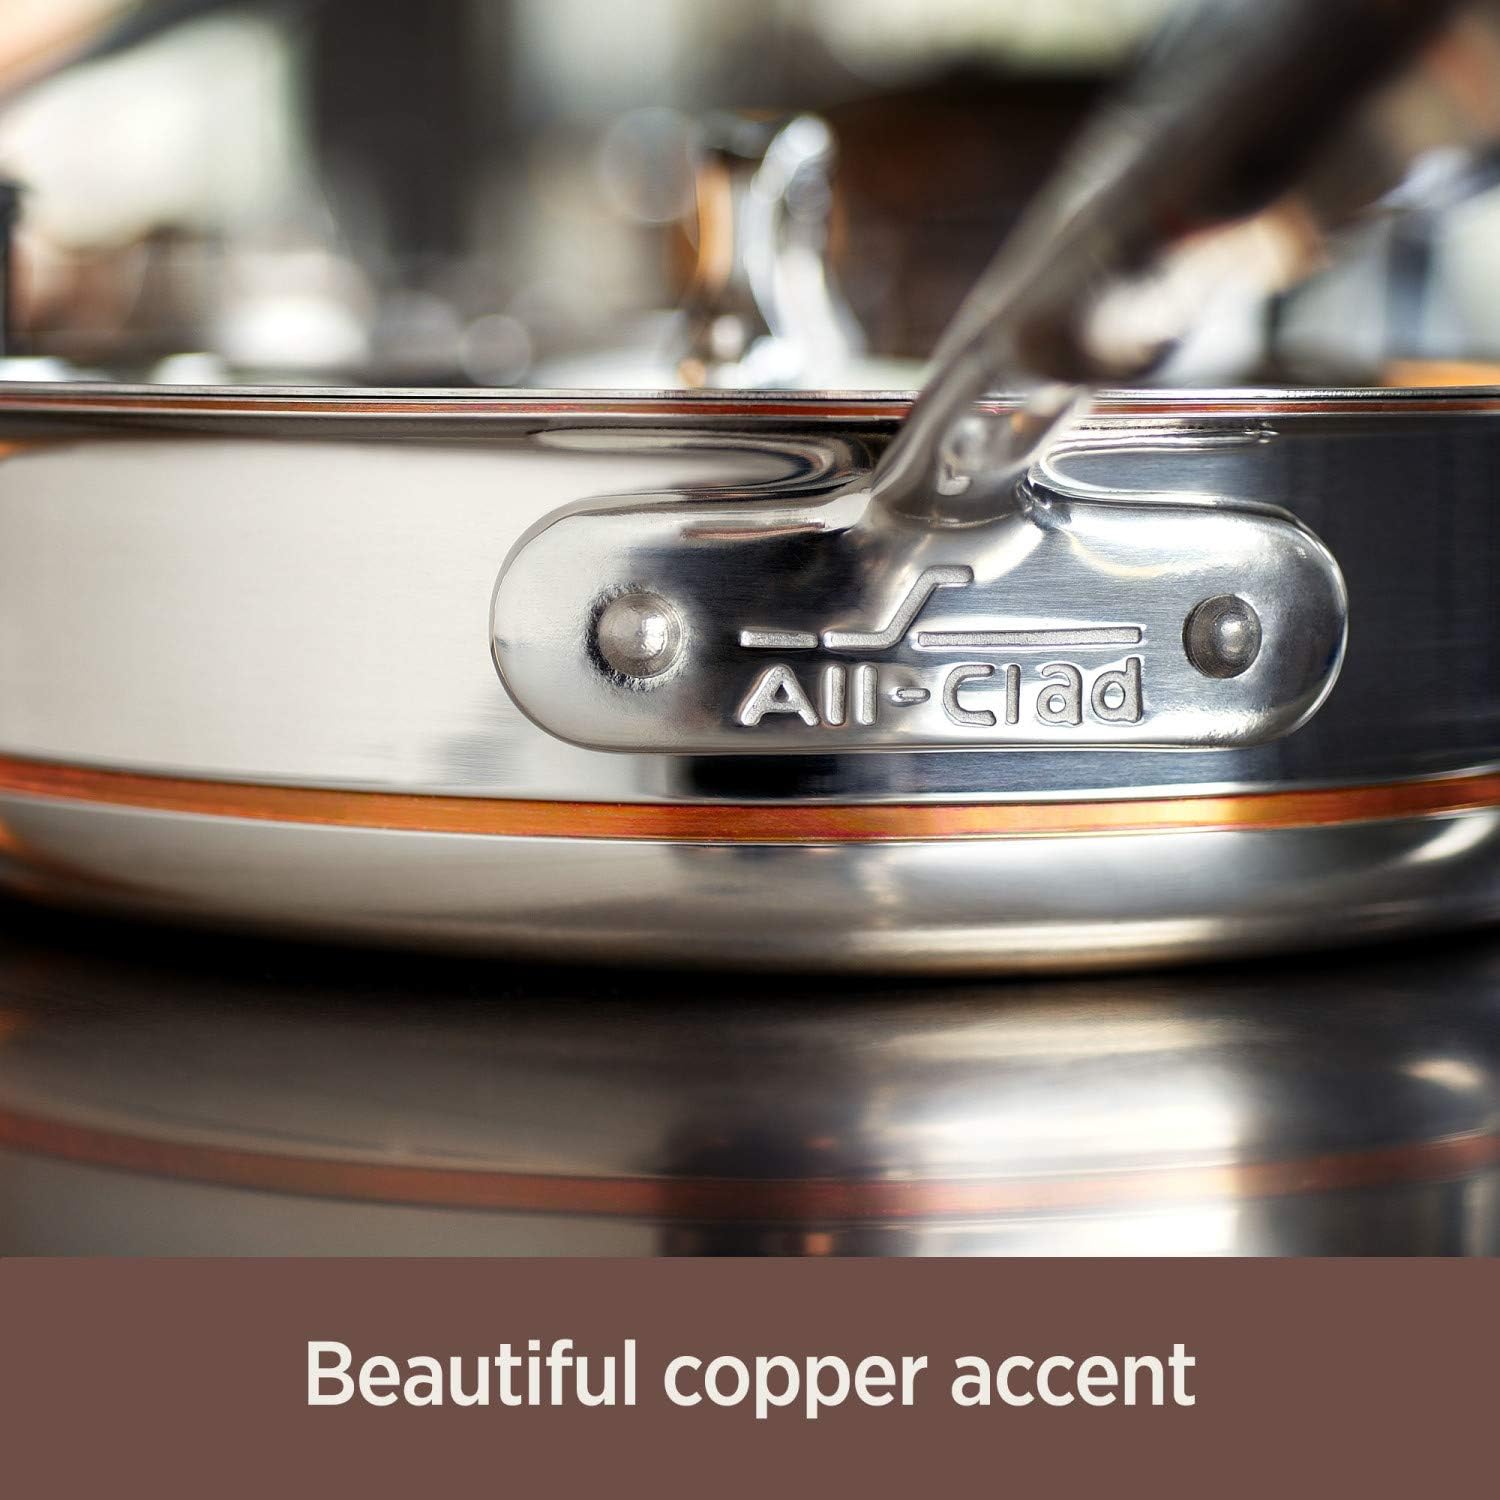 All-Clad Copper Core Saute Pan